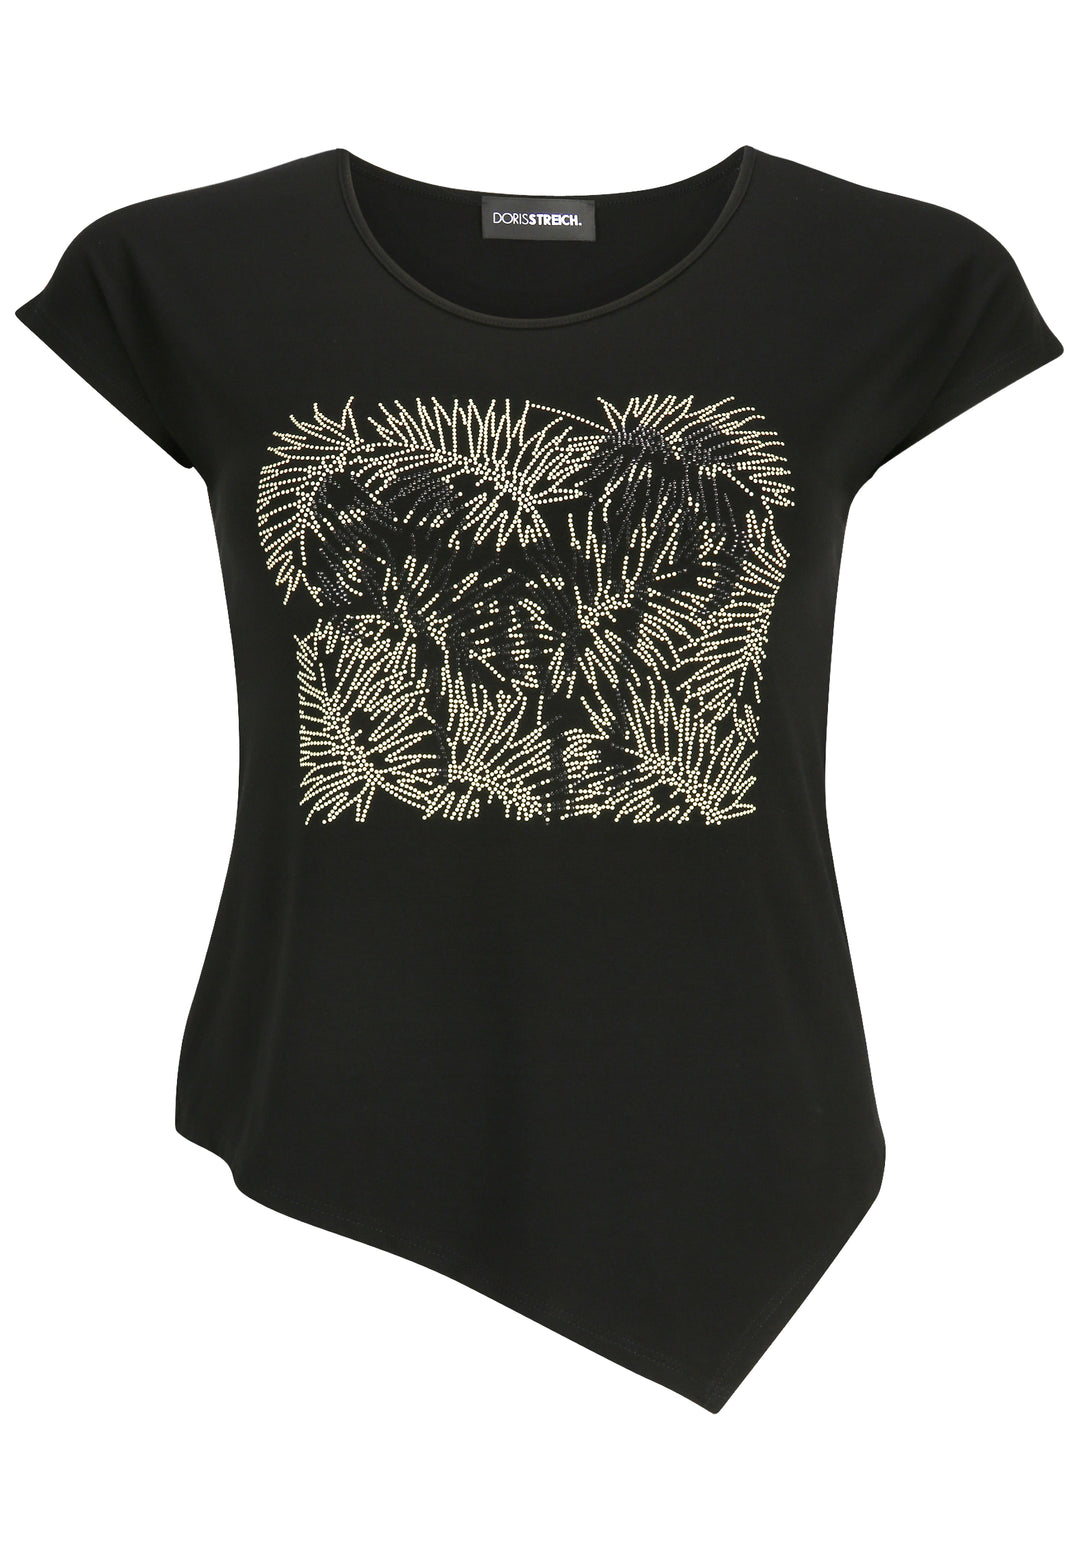 zwart t-shirt met tekening - doris streich - 537270-78 - grote maten - dameskleding - kledingwinkel - herent - leuven